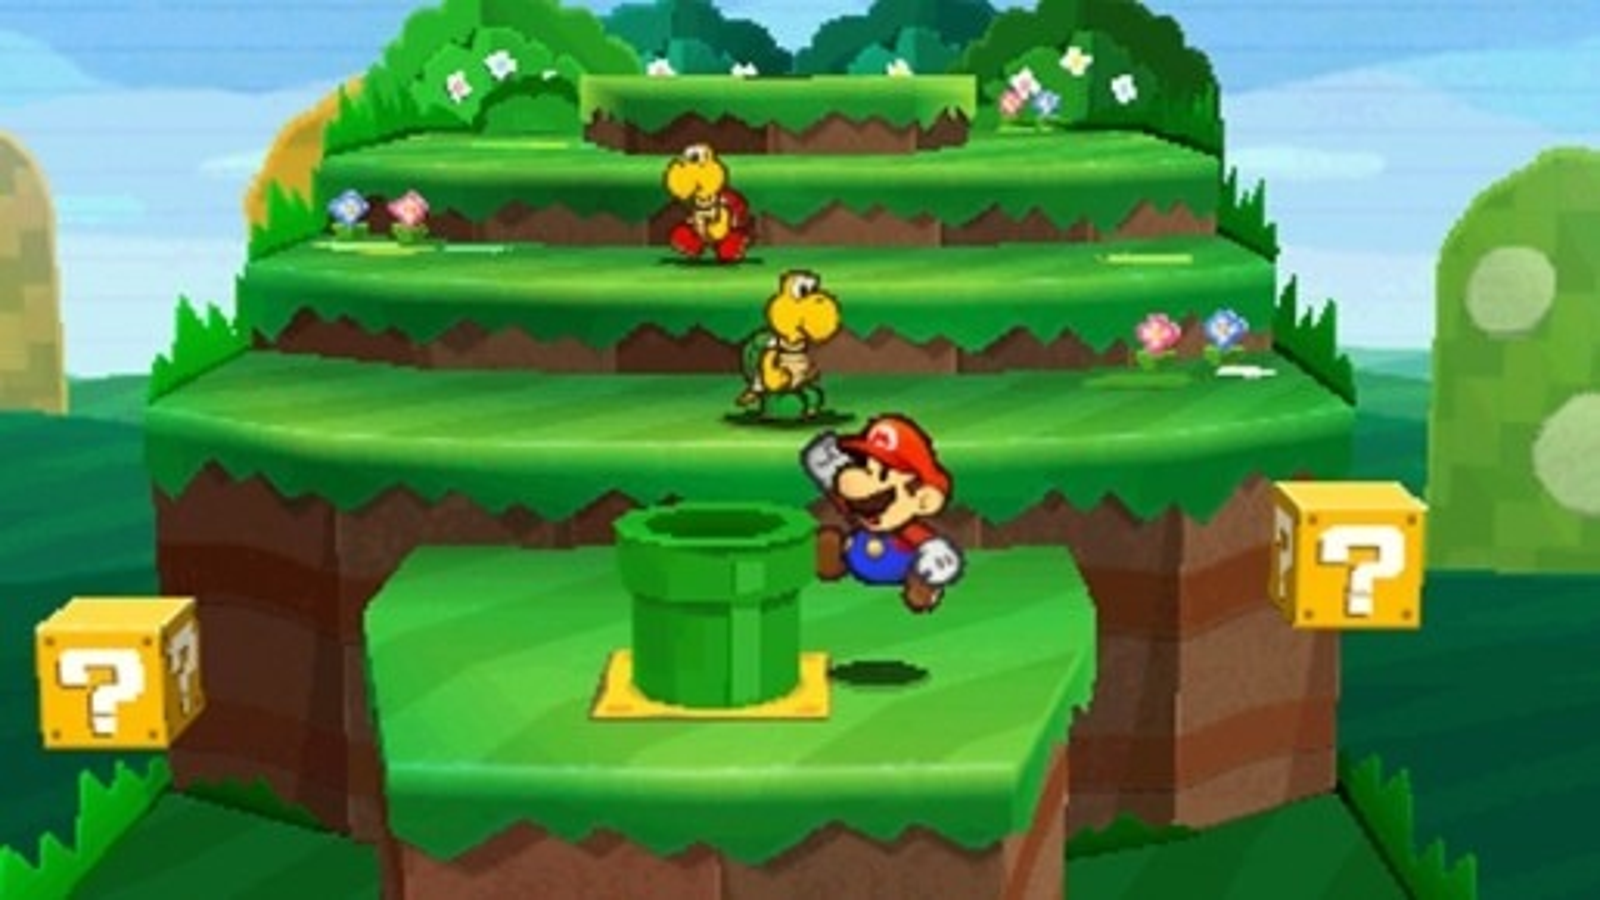 Paper Mario: Sticker Star release set for early December | Eurogamer.net